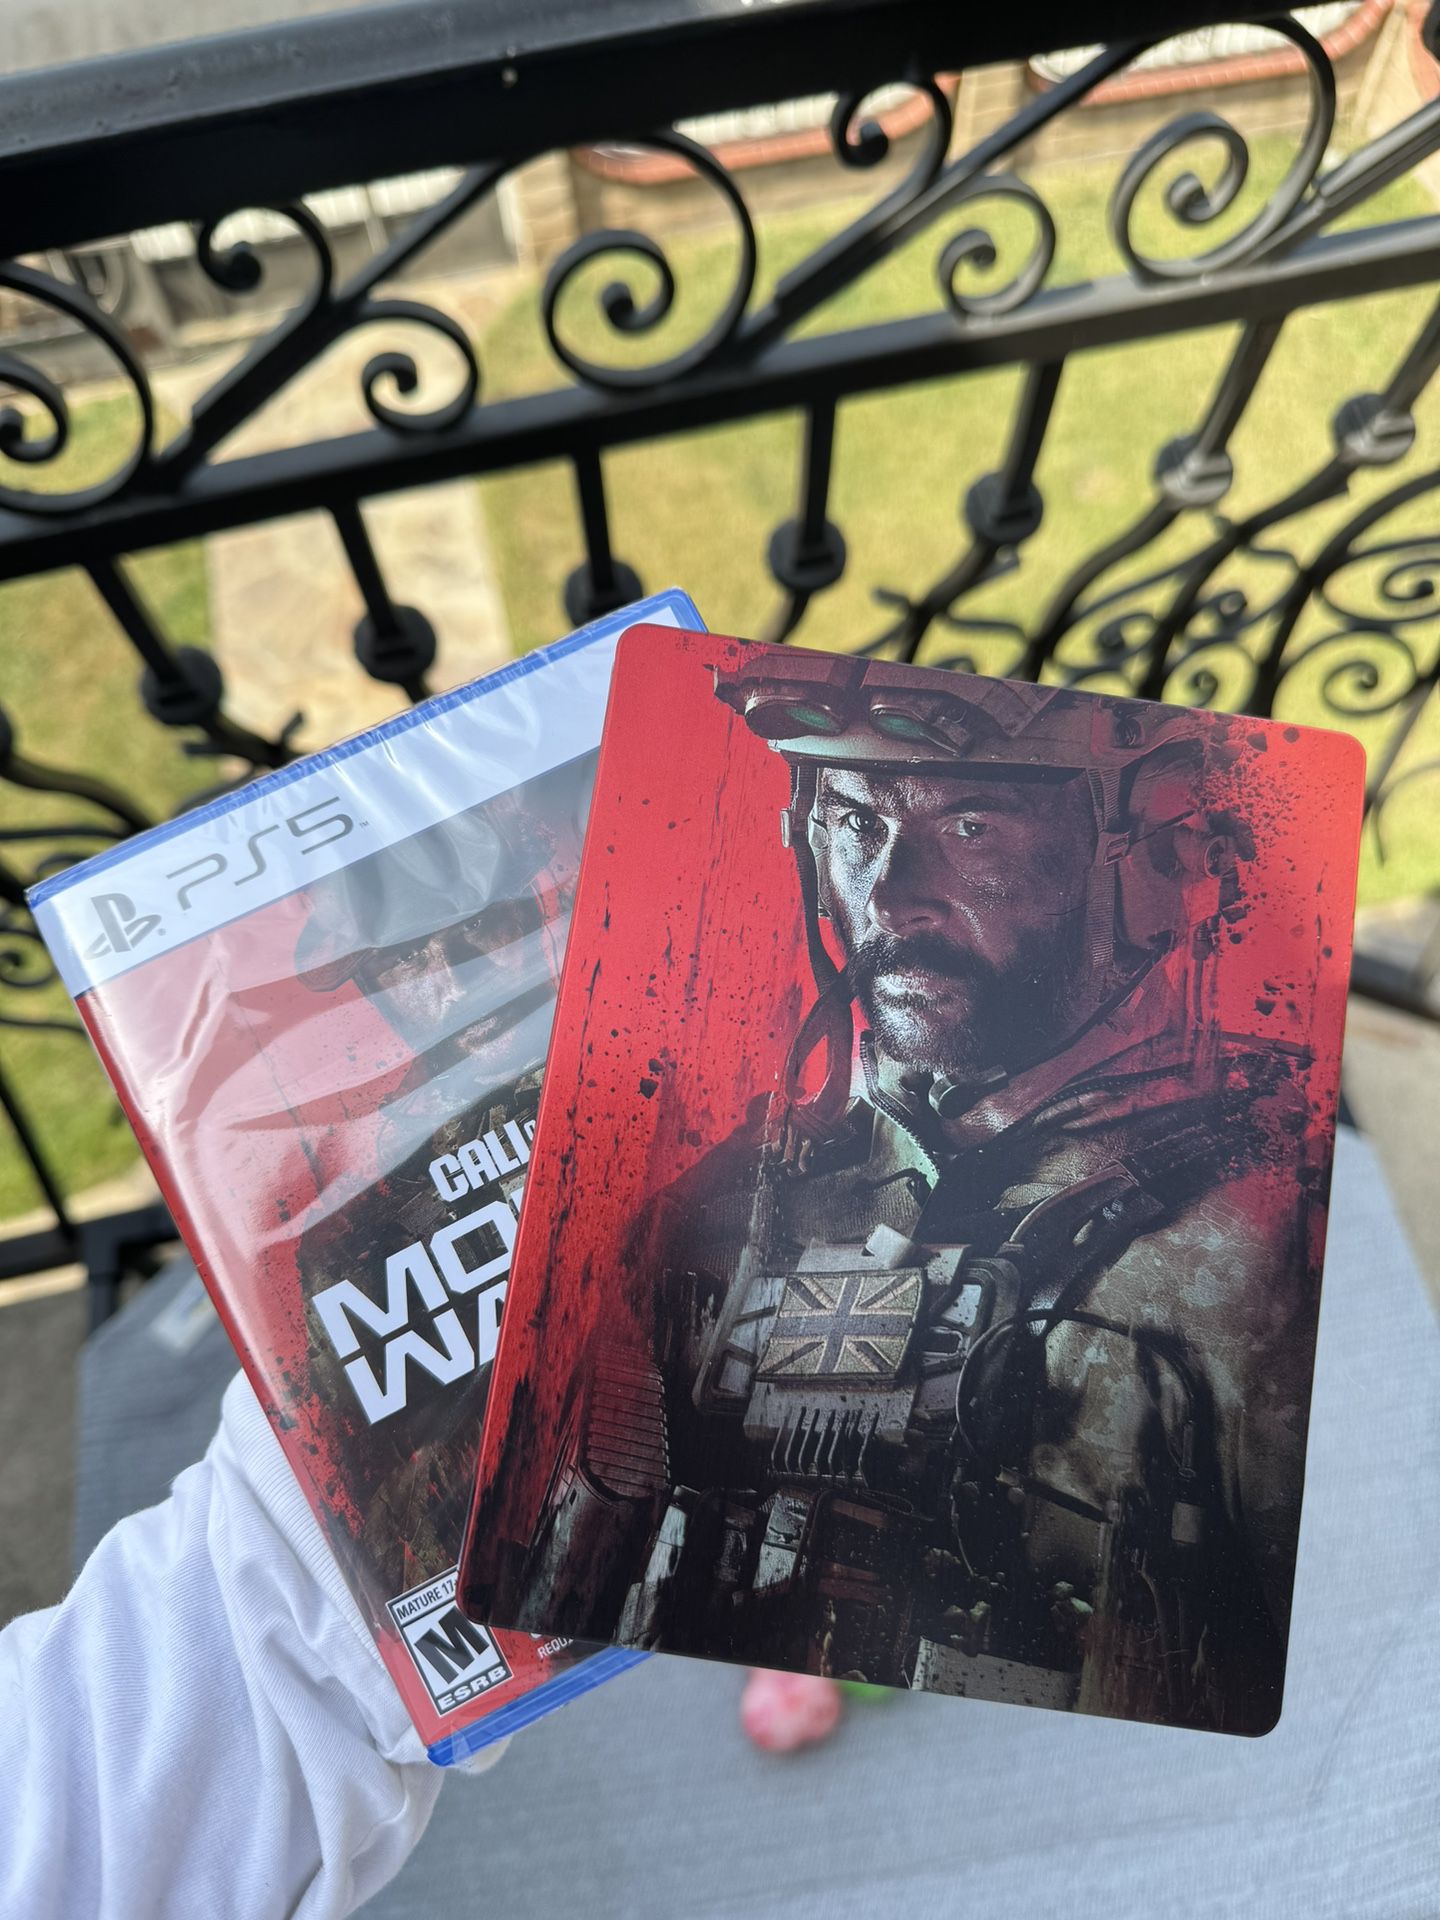 Call Of Duty Modern Warfare 3 PS5 + Steelbook